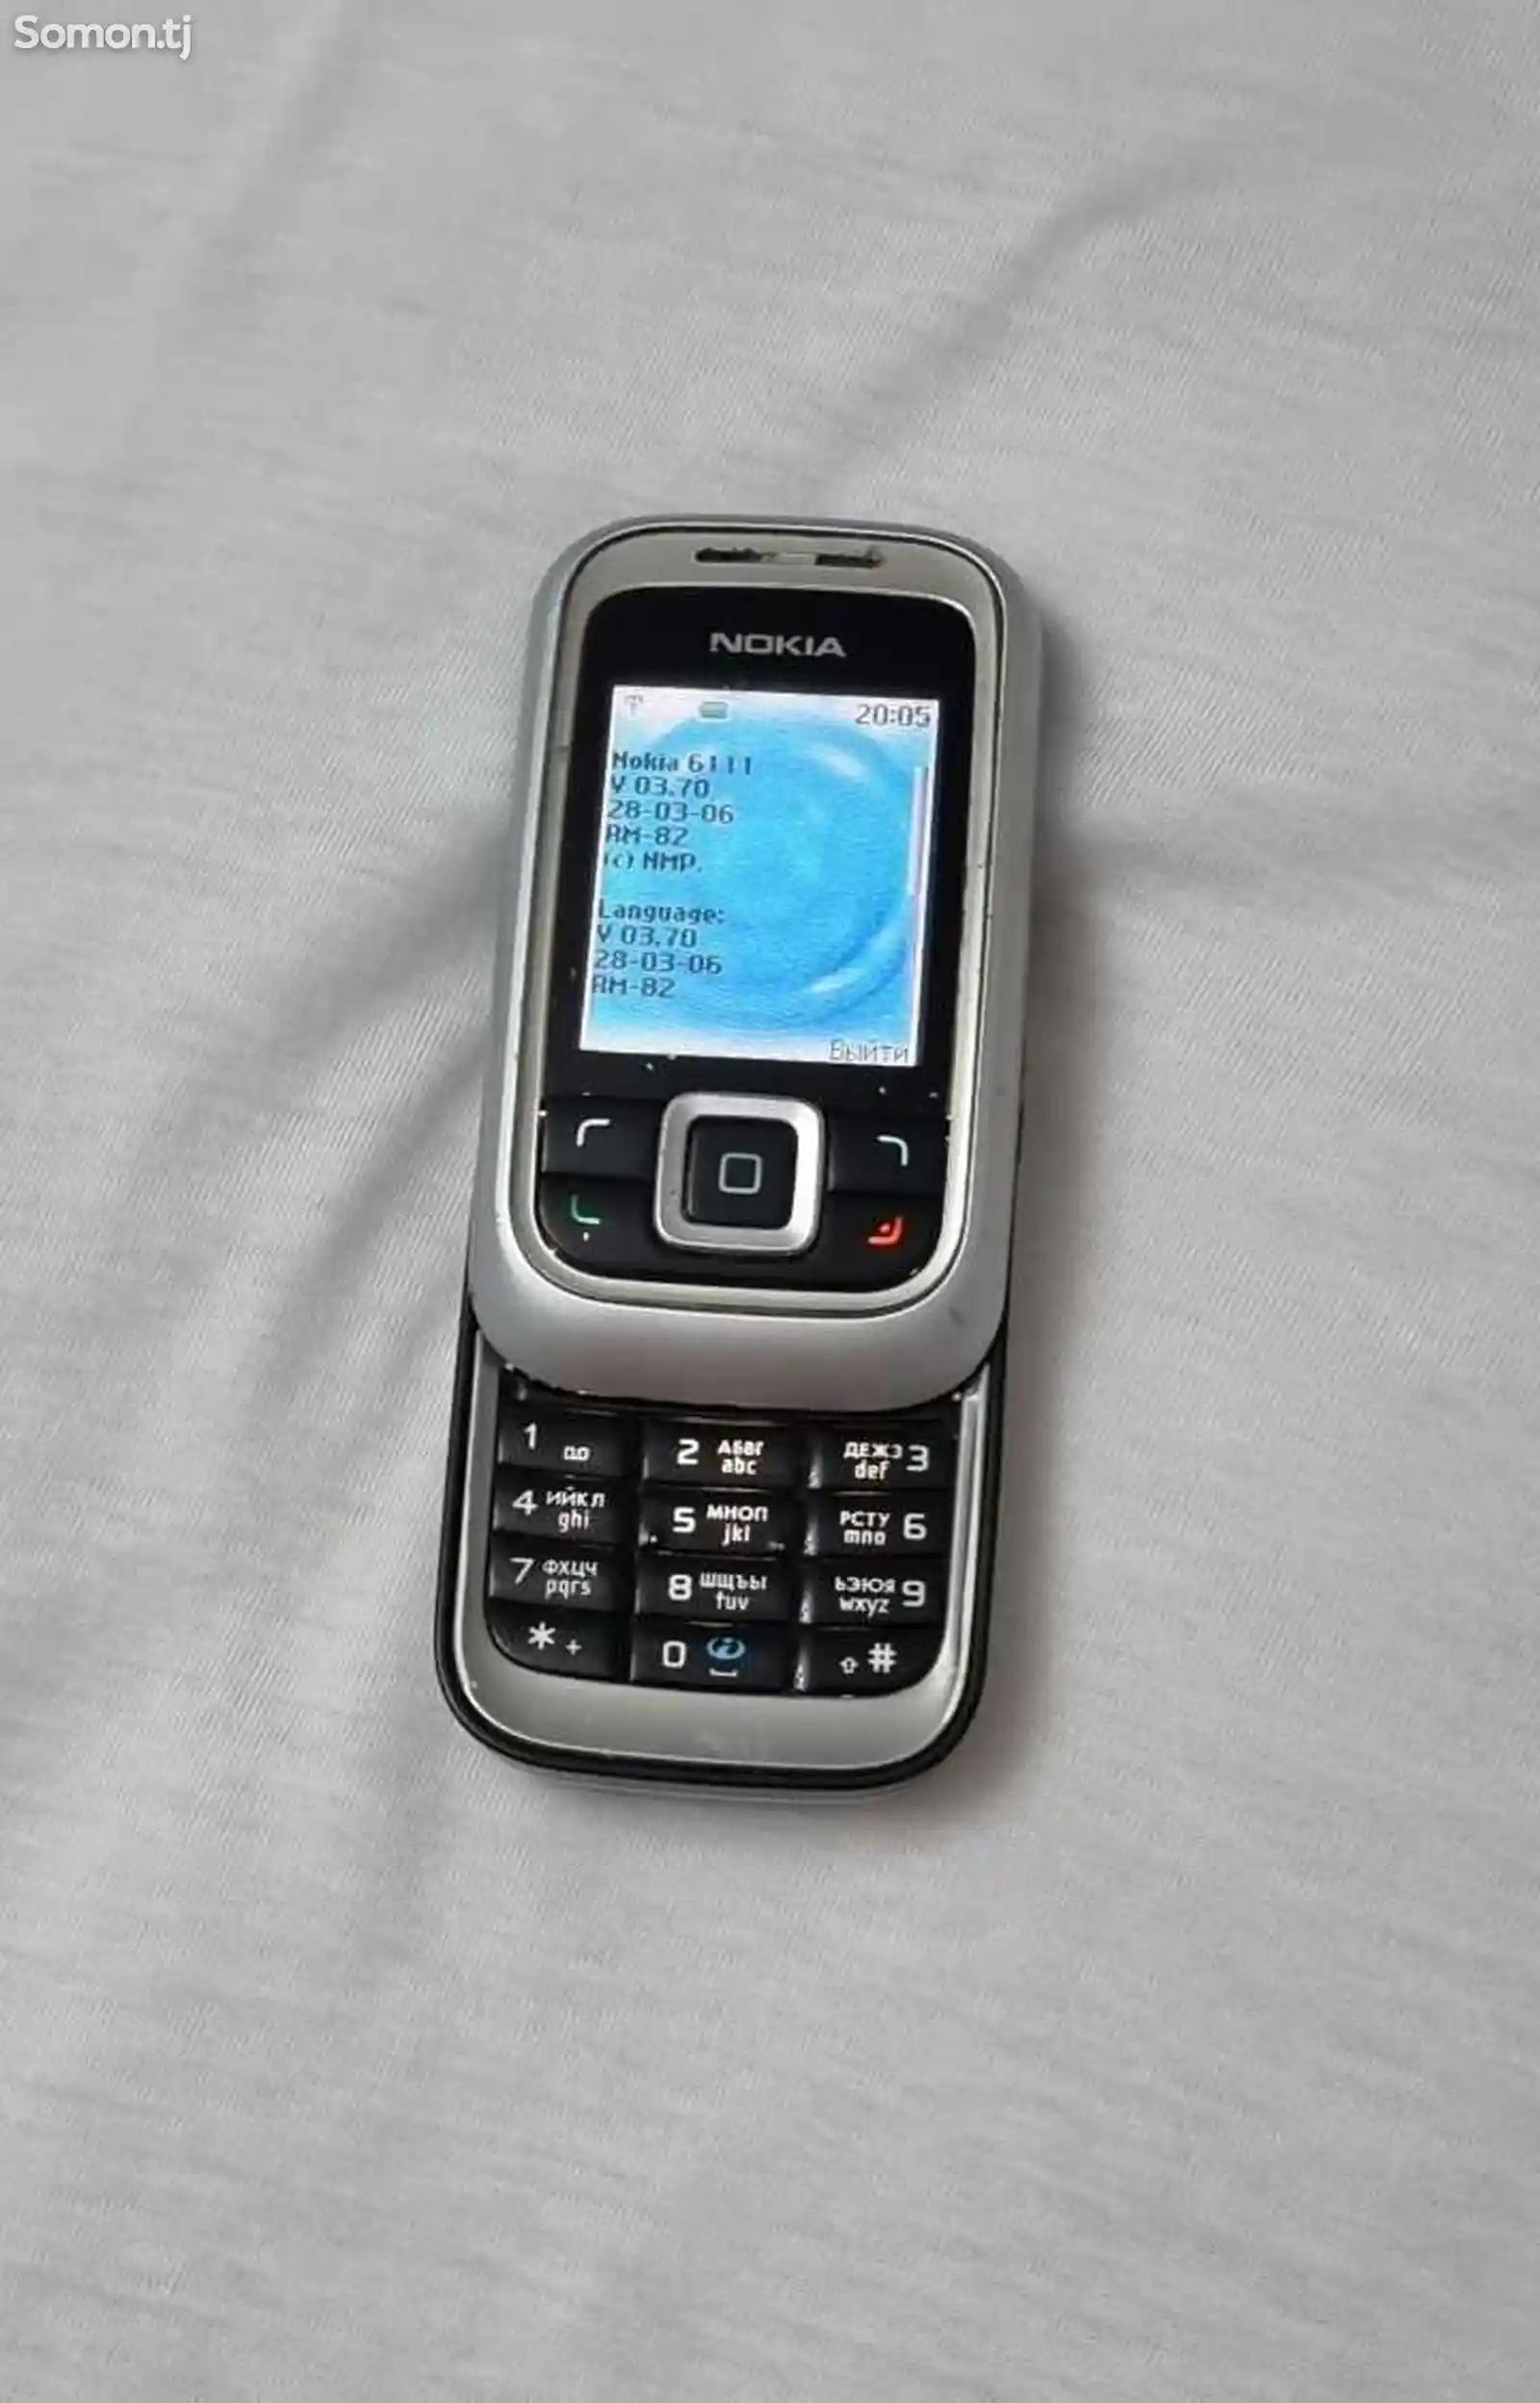 Nokia 6111-1